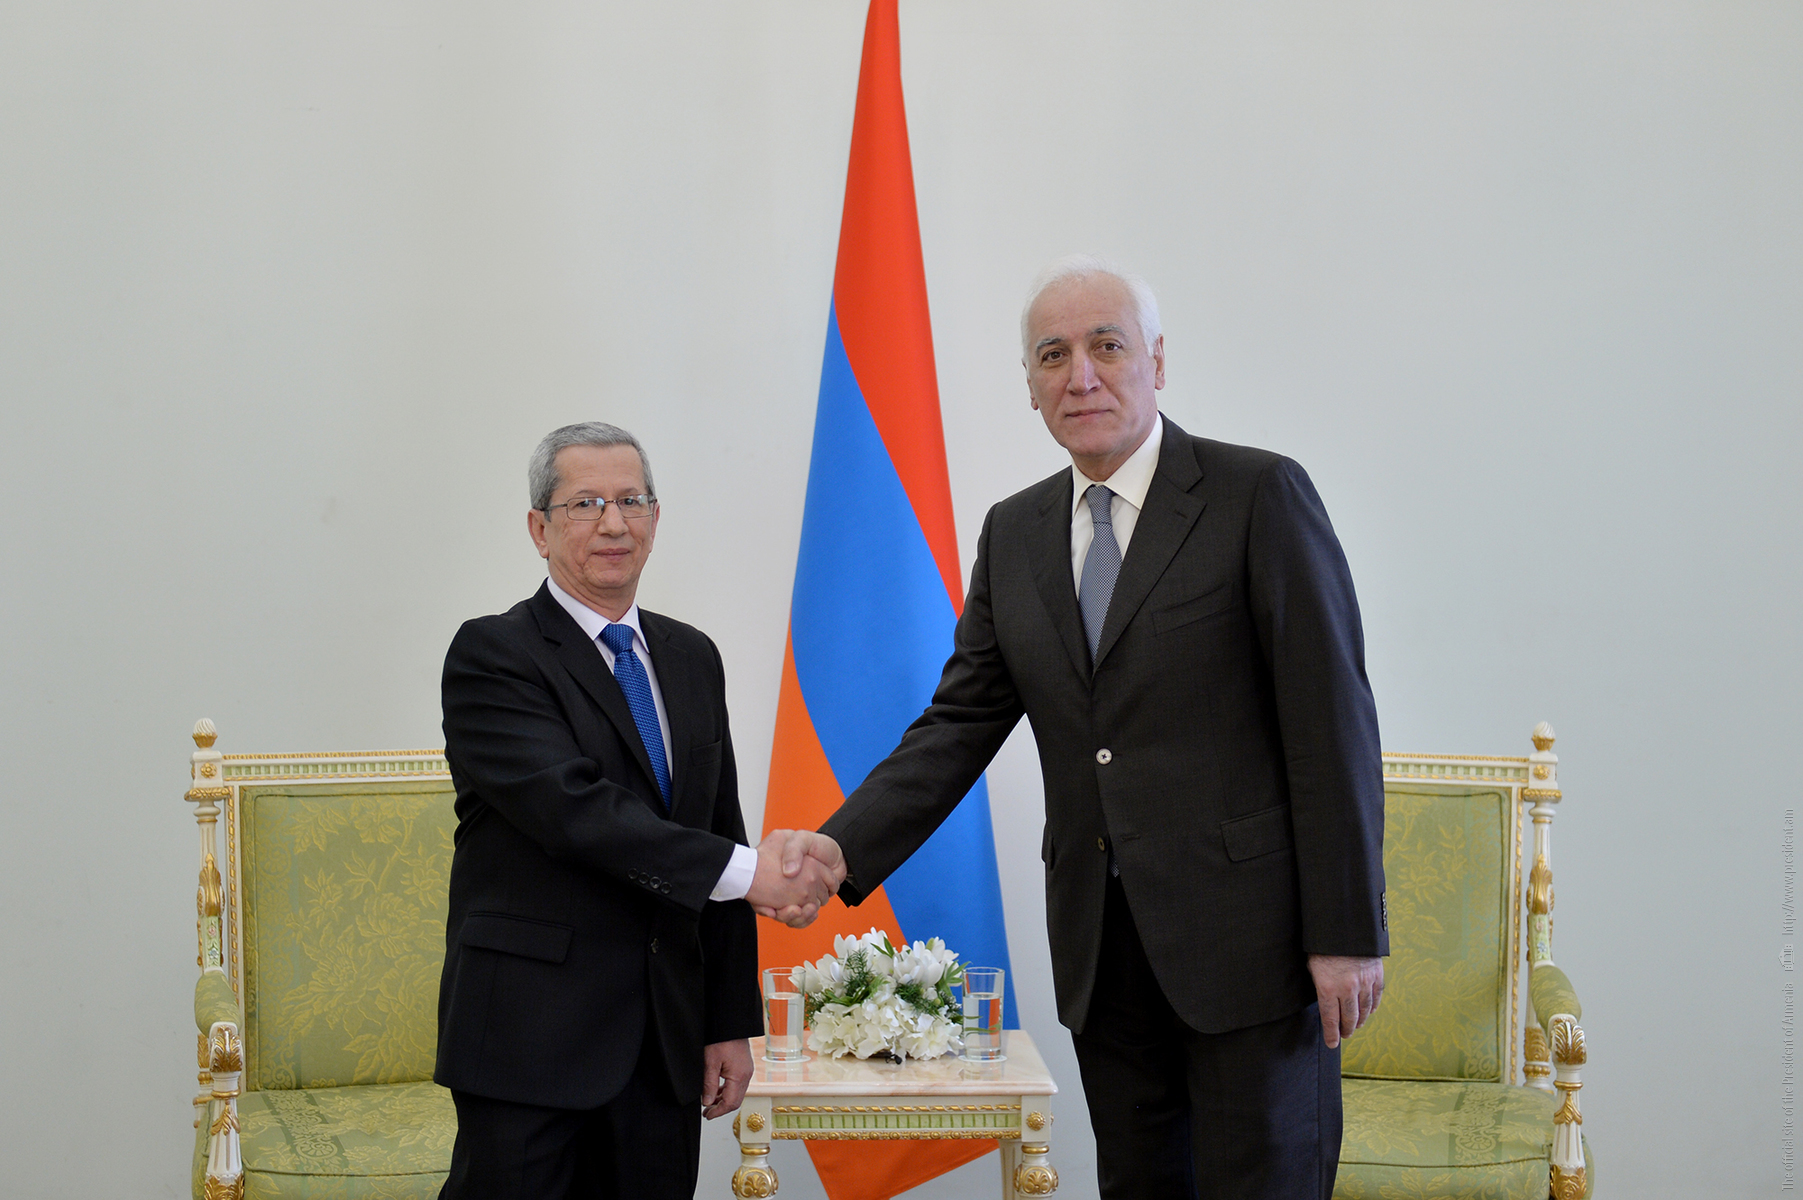 Հայաստանի նախագահը և Կուբայի դեսպանը քննարկել են համագործակցության հնարավորությունները